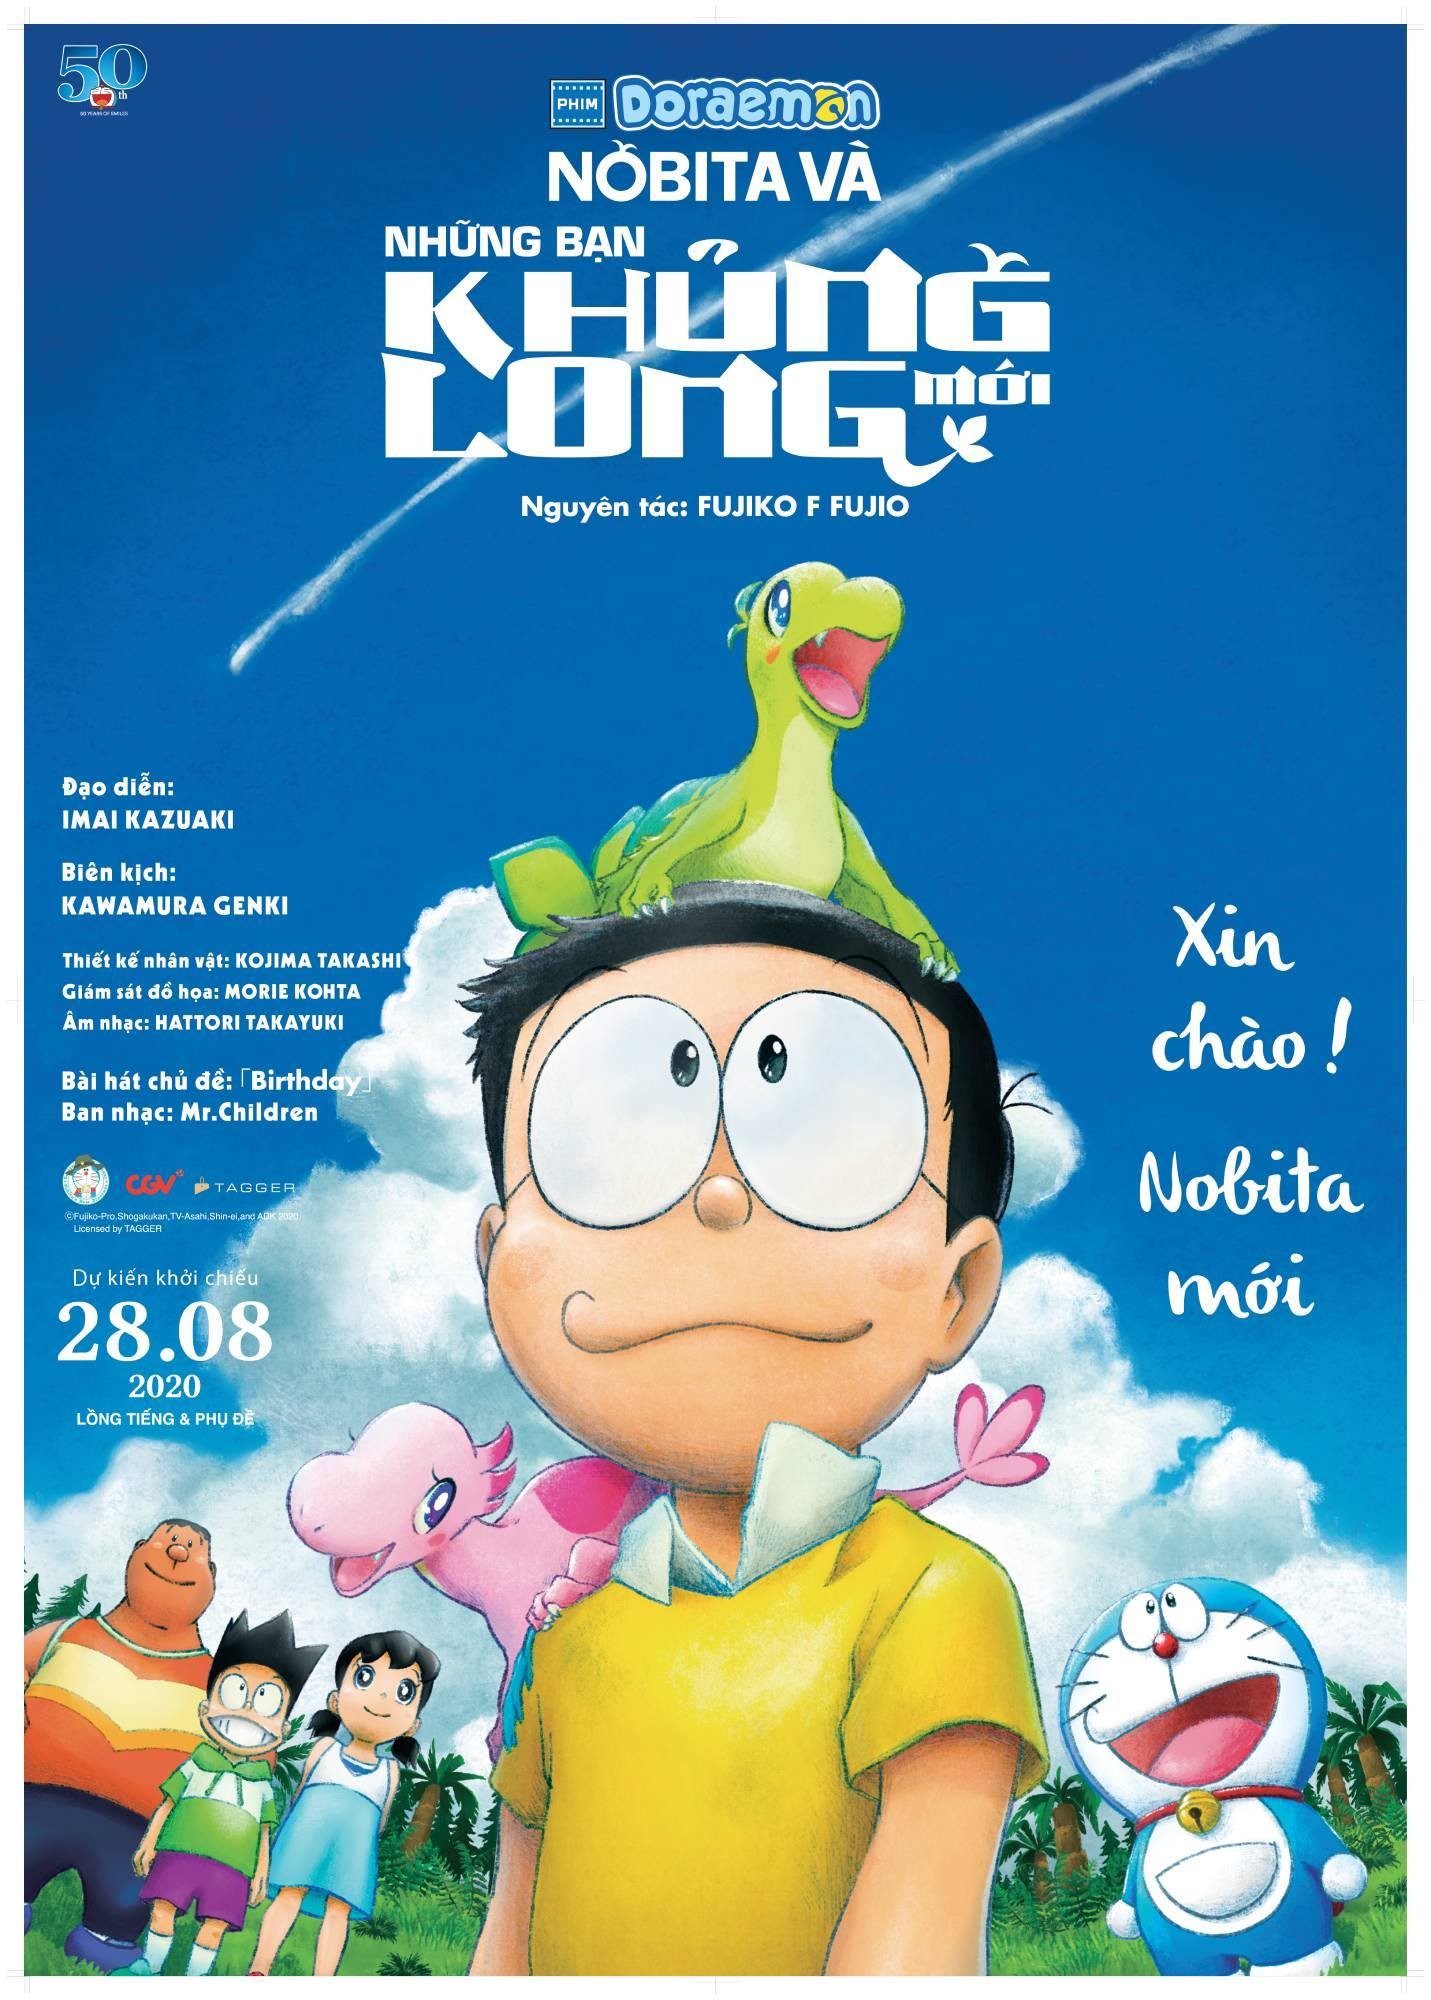 Nobita và những bạn khủng long mới: Khám phá thế giới đầy phiêu lưu và bất ngờ cùng những bạn khủng long mới của Nobita. Những hình ảnh đẹp và sinh động sẽ giúp bạn khám phá thế giới tiền sử và thỏa sức mơ ước. Những bạn khủng long mới cũng sẽ giúp bạn học hỏi những giá trị đích thực trong cuộc sống.